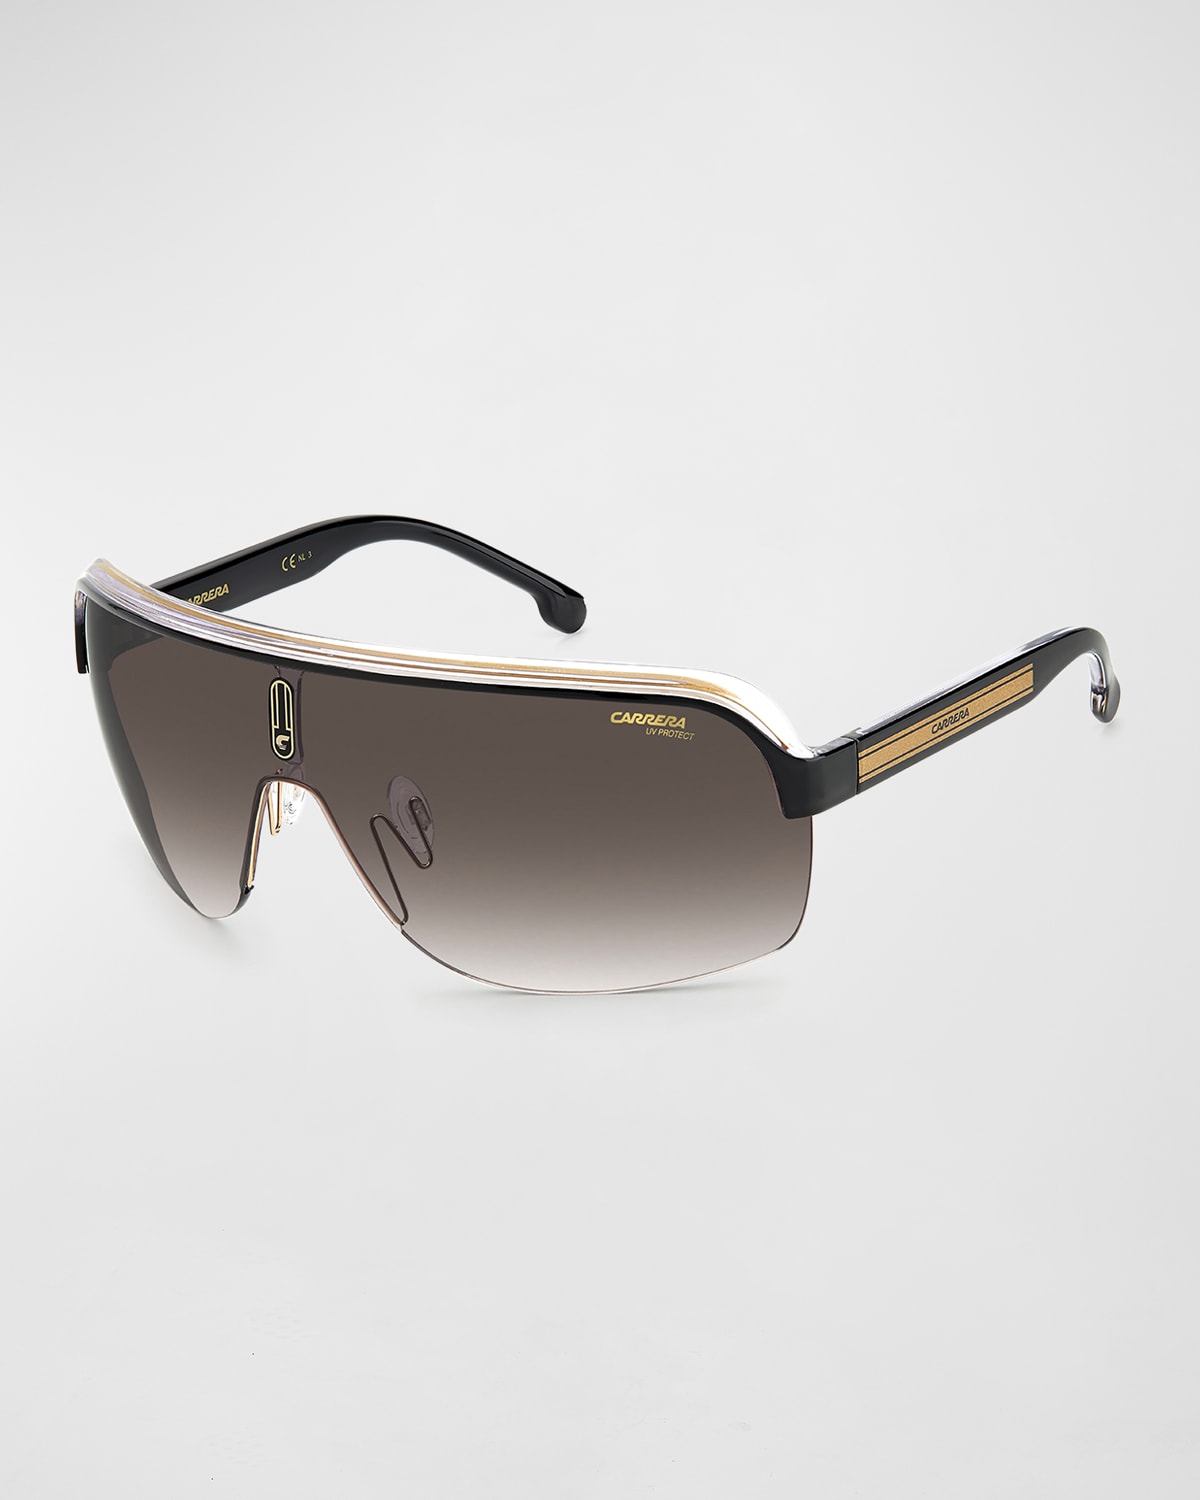 Carrera Men's Topcar 1/n Gradient Shield Sunglasses In Black / Brown / Gold